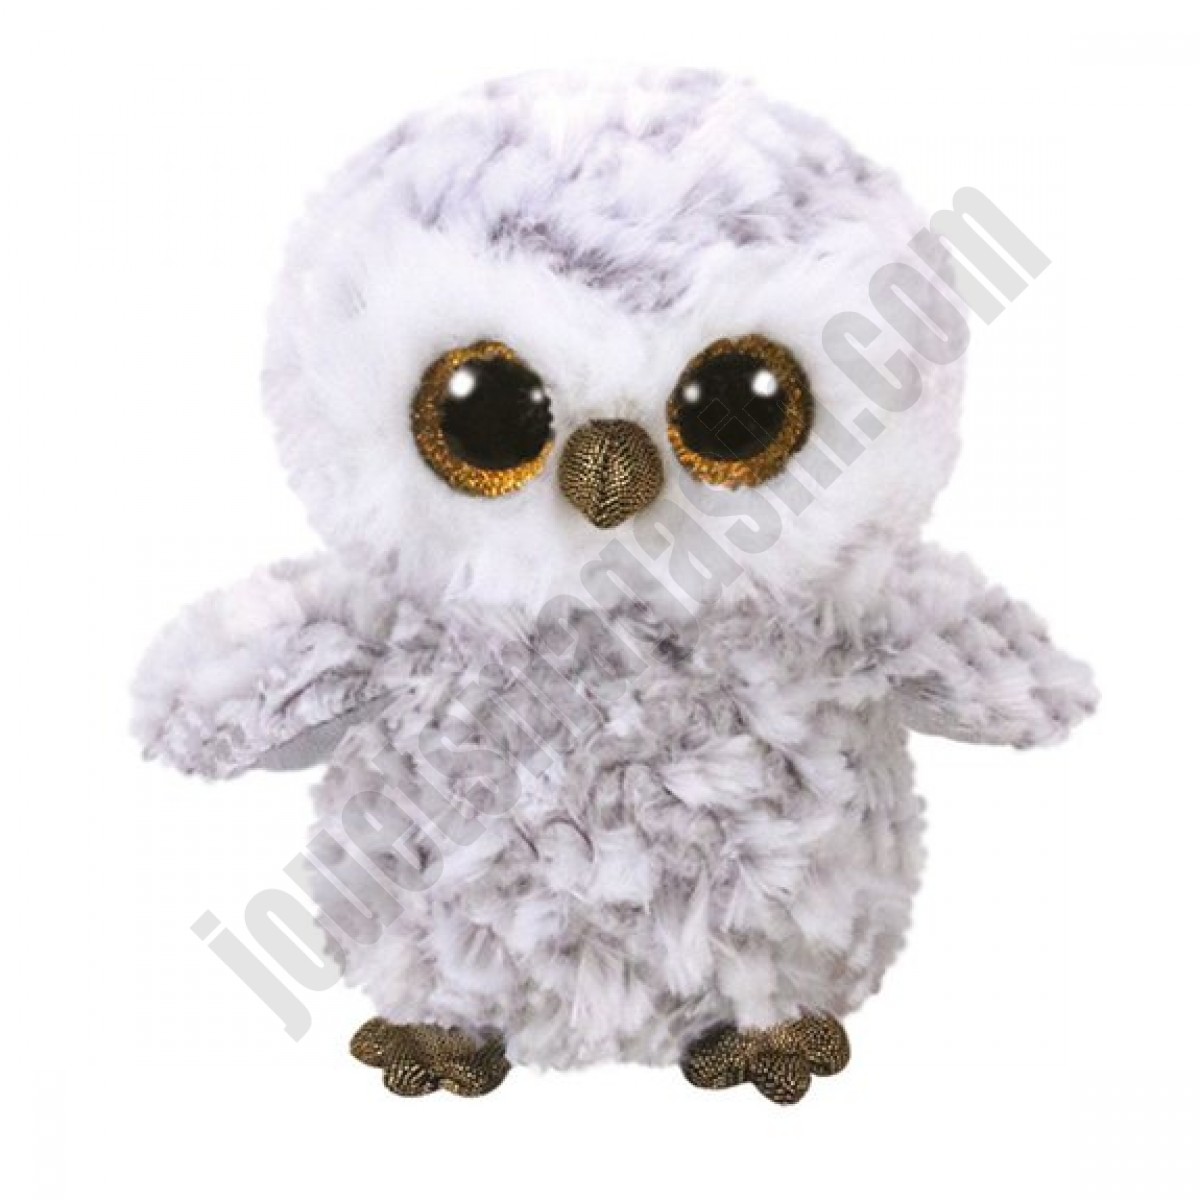 Beanie Boo's : Peluche Owlette Hibou 15 cm ◆◆◆ Nouveau - Beanie Boo's : Peluche Owlette Hibou 15 cm ◆◆◆ Nouveau